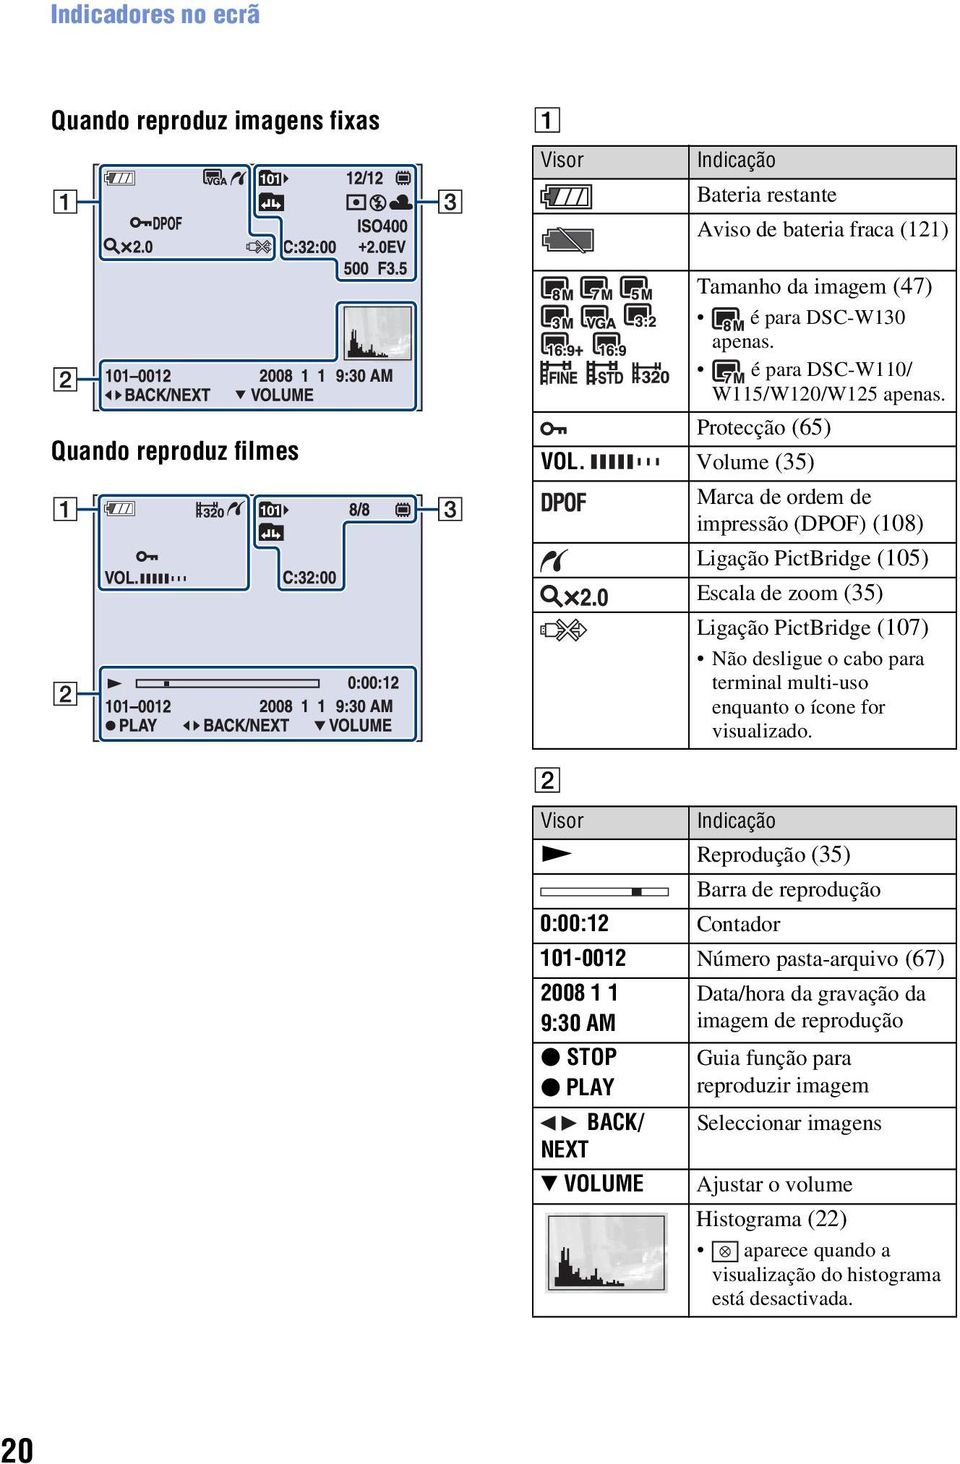 Volume (35) Marca de ordem de impressão (DPOF) (108) Ligação PictBridge (105) Escala de zoom (35) Ligação PictBridge (107) Não desligue o cabo para terminal multi-uso enquanto o ícone for visualizado.